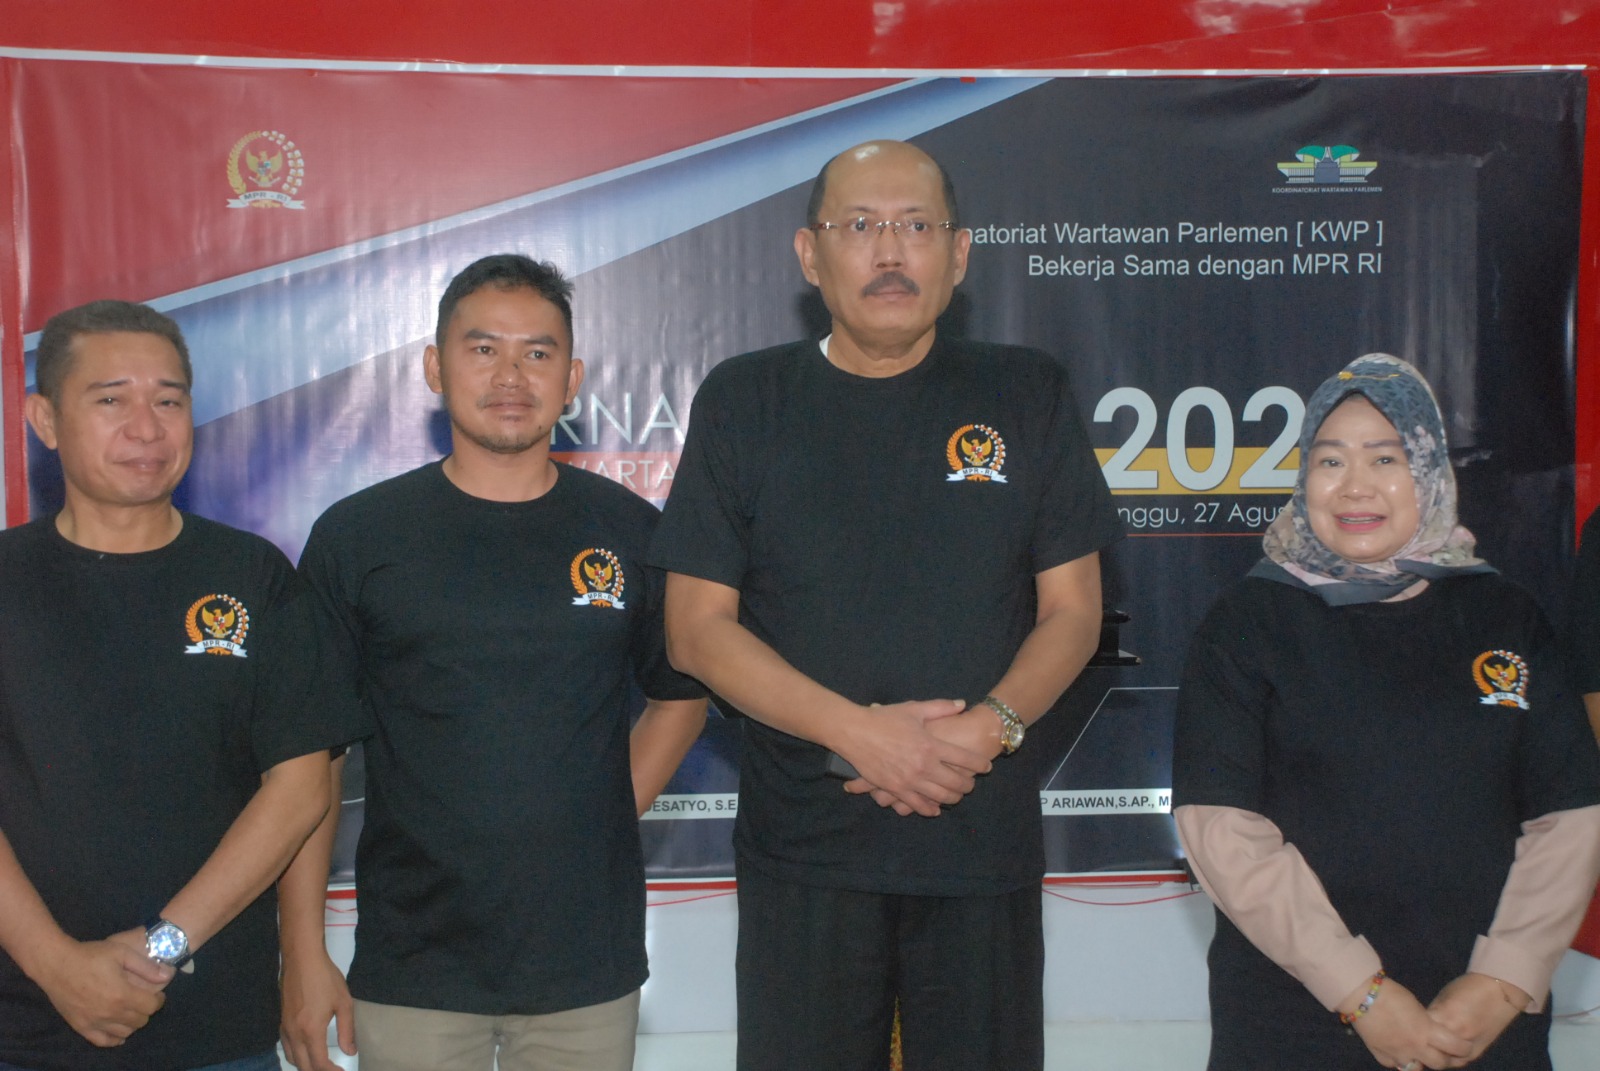 MPR RI bekerja sama dengan KWP gelar turnamen catur dengan memperebutkan piala Ketua MPR RI Bambang Soesatyo (Ashar/SinPo.id)